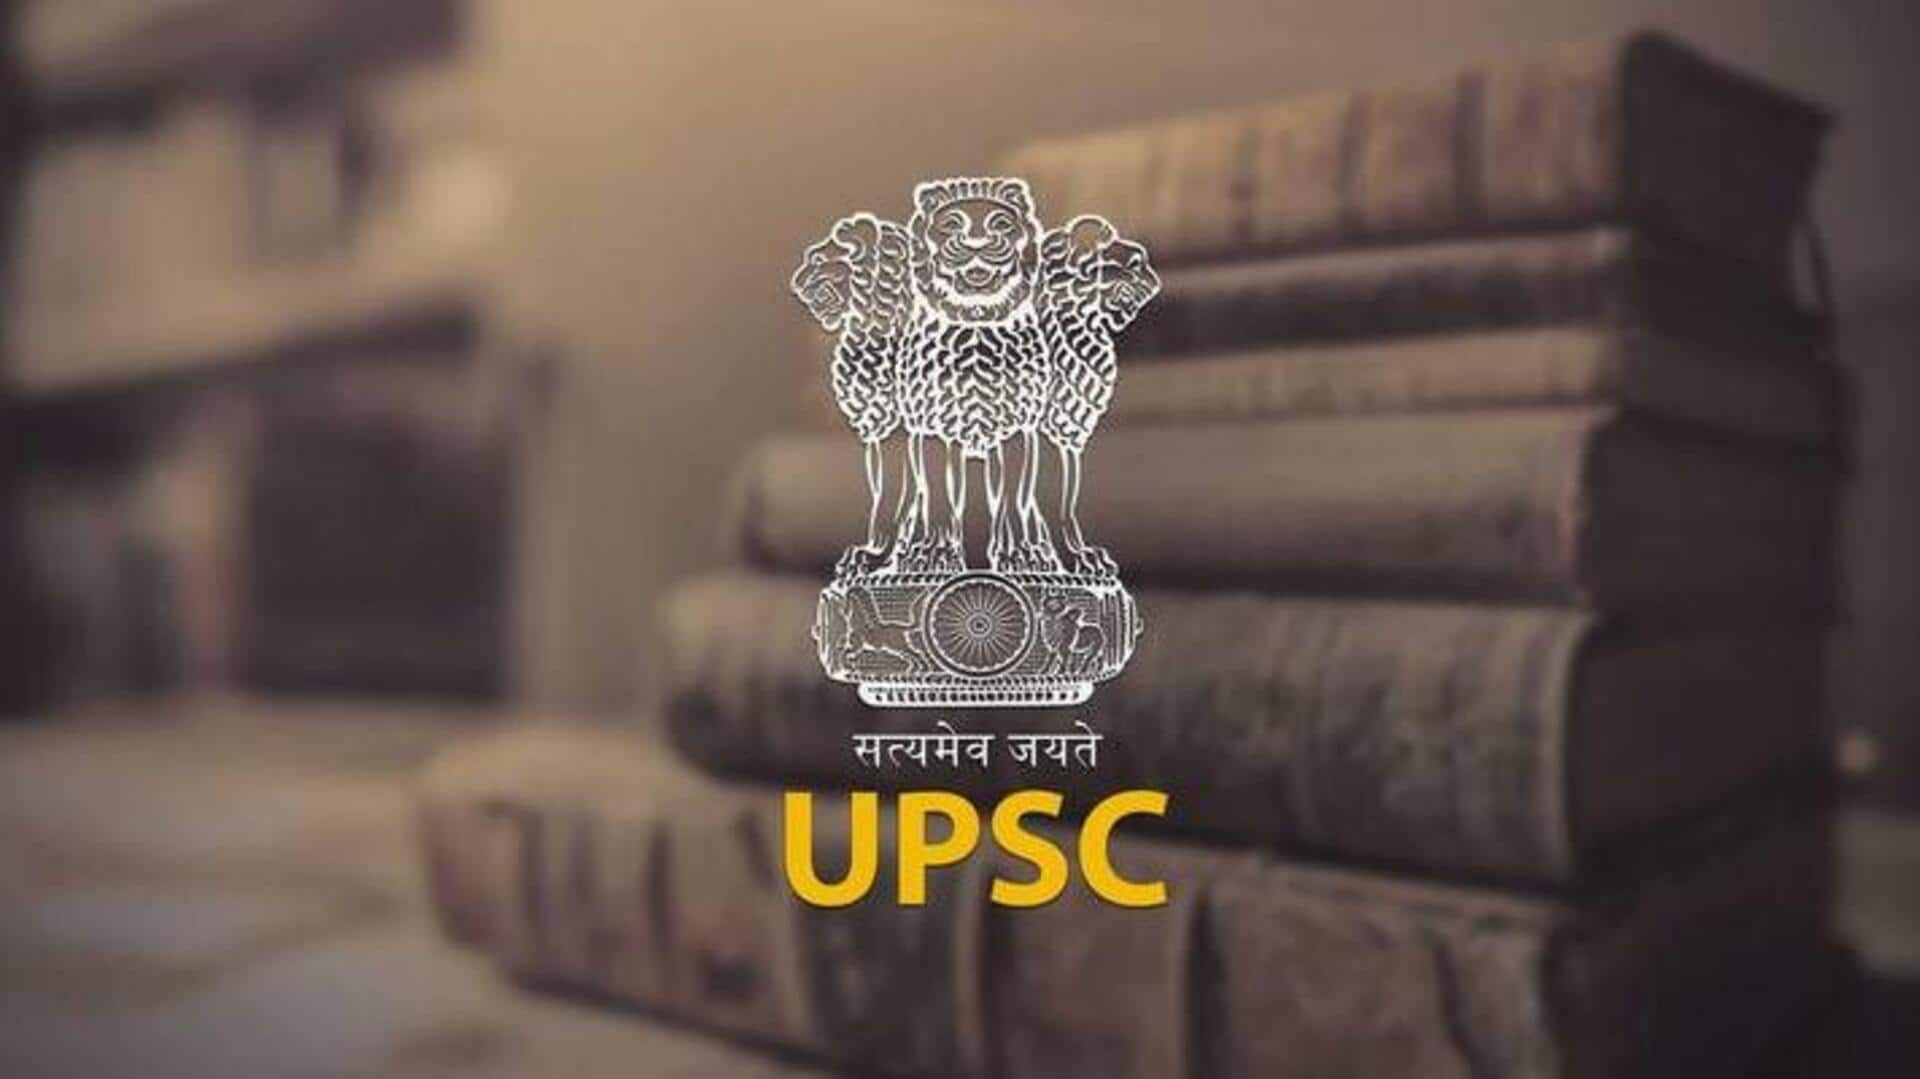 पहली बार UPSC परीक्षा में हो रहे हैं शामिल? ध्यान रखें ये बातें